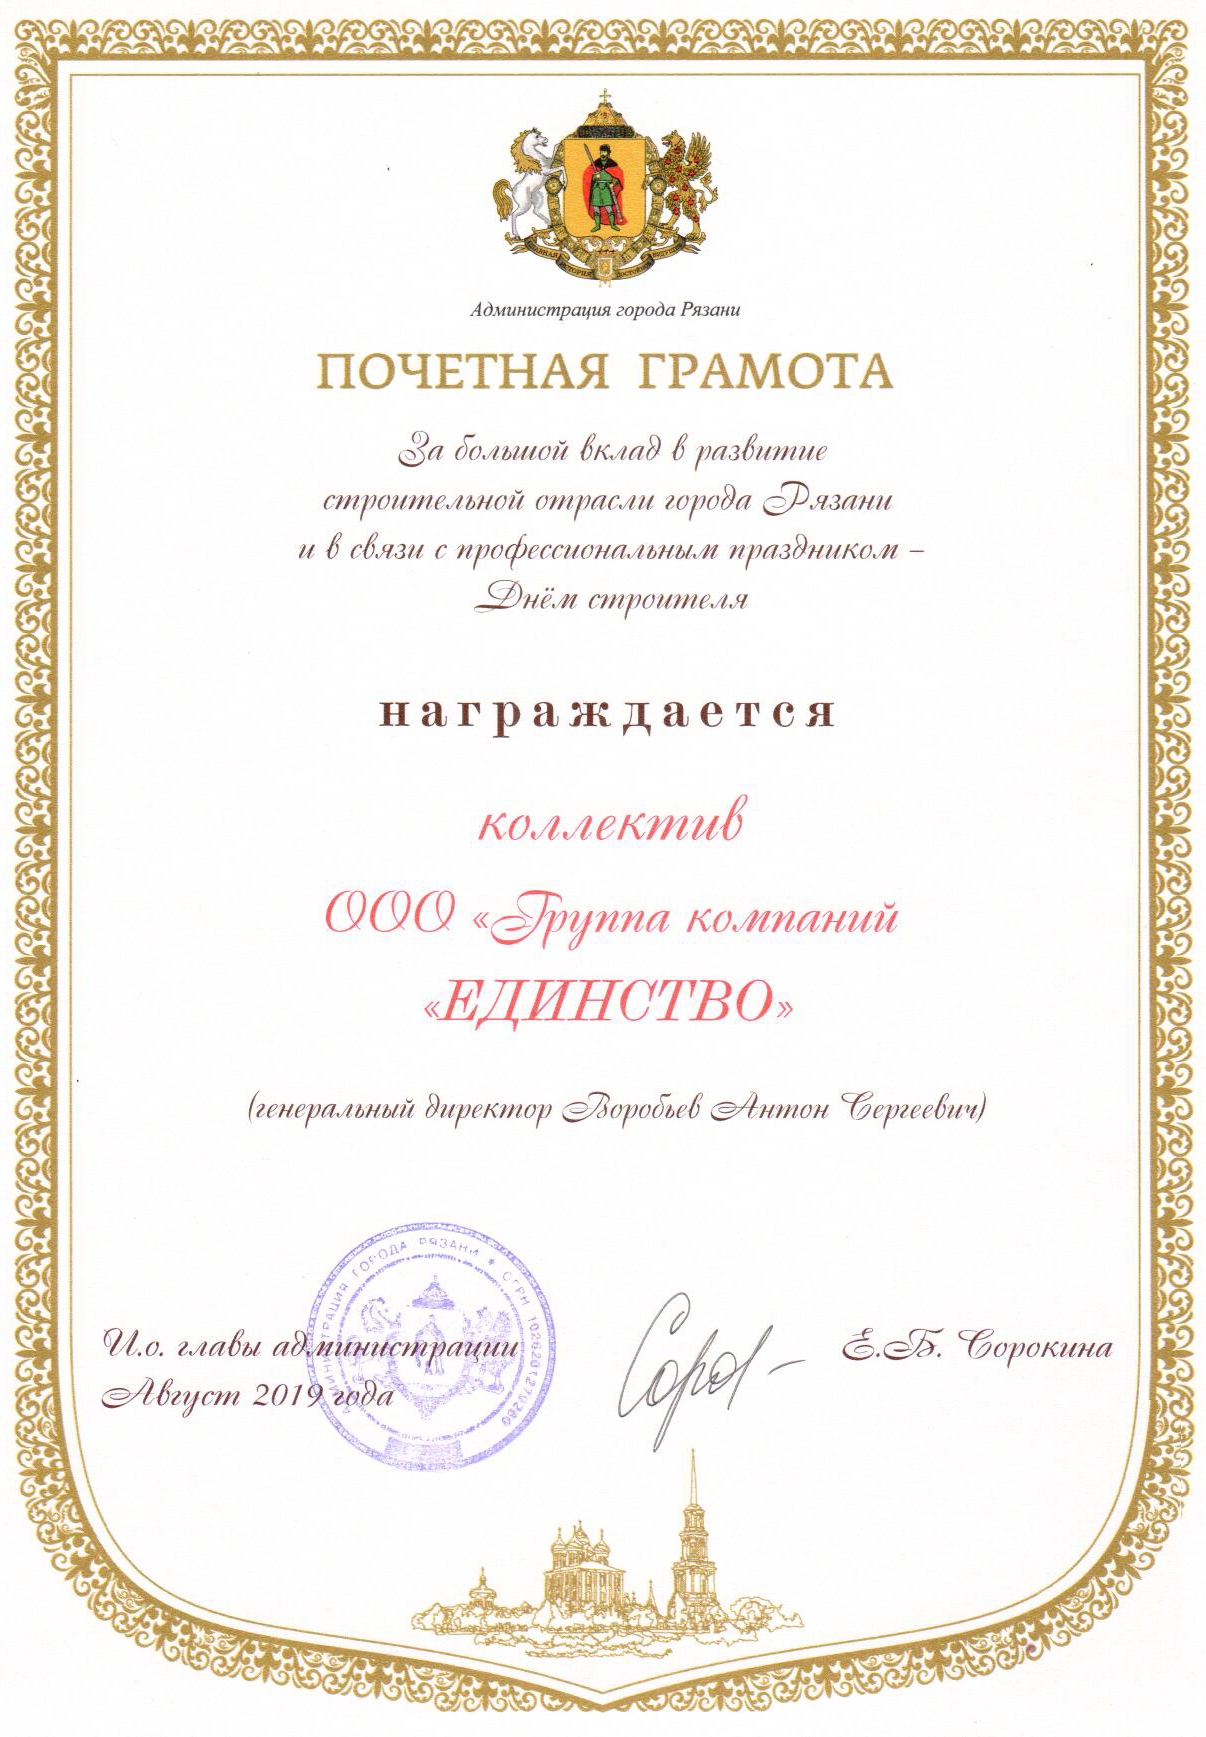 Группа компаний «ЕДИНСТВО» получила награды в честь Дня строителя